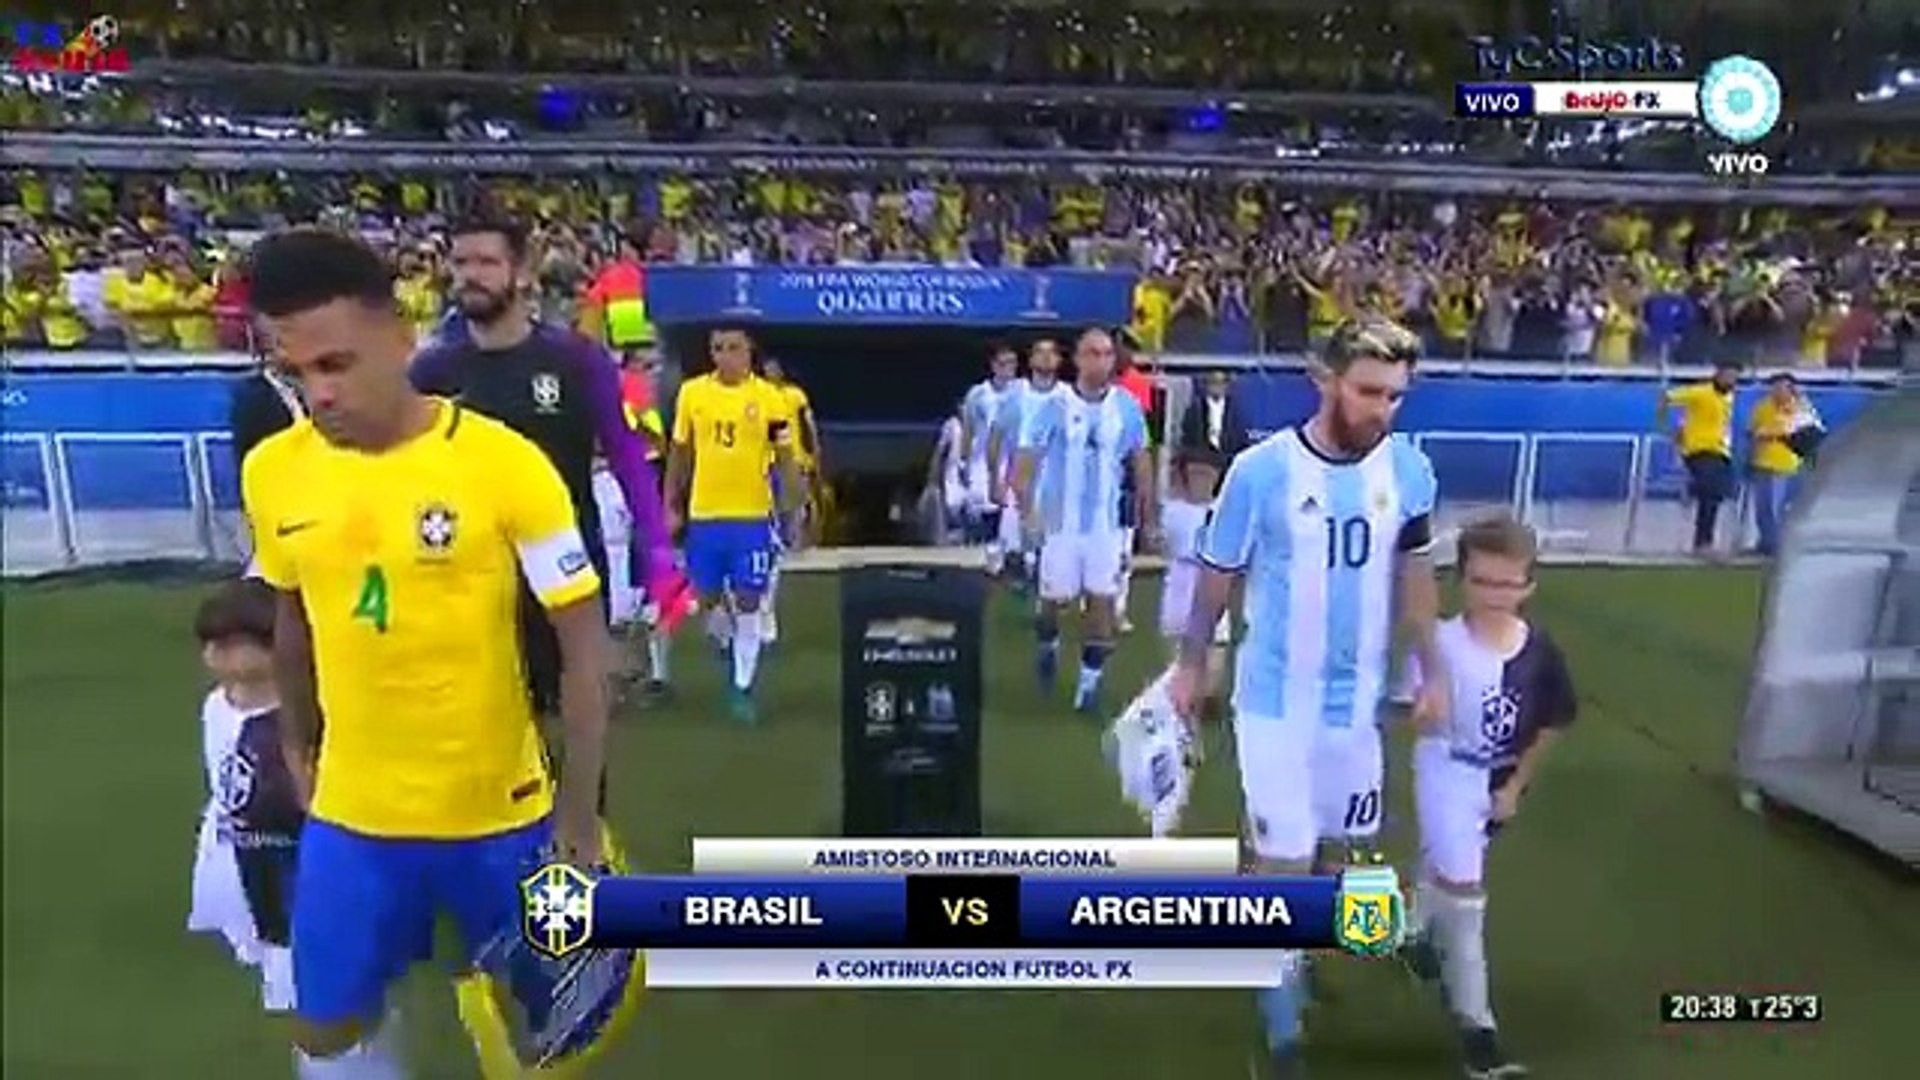 Argentina vs brazil 10-1